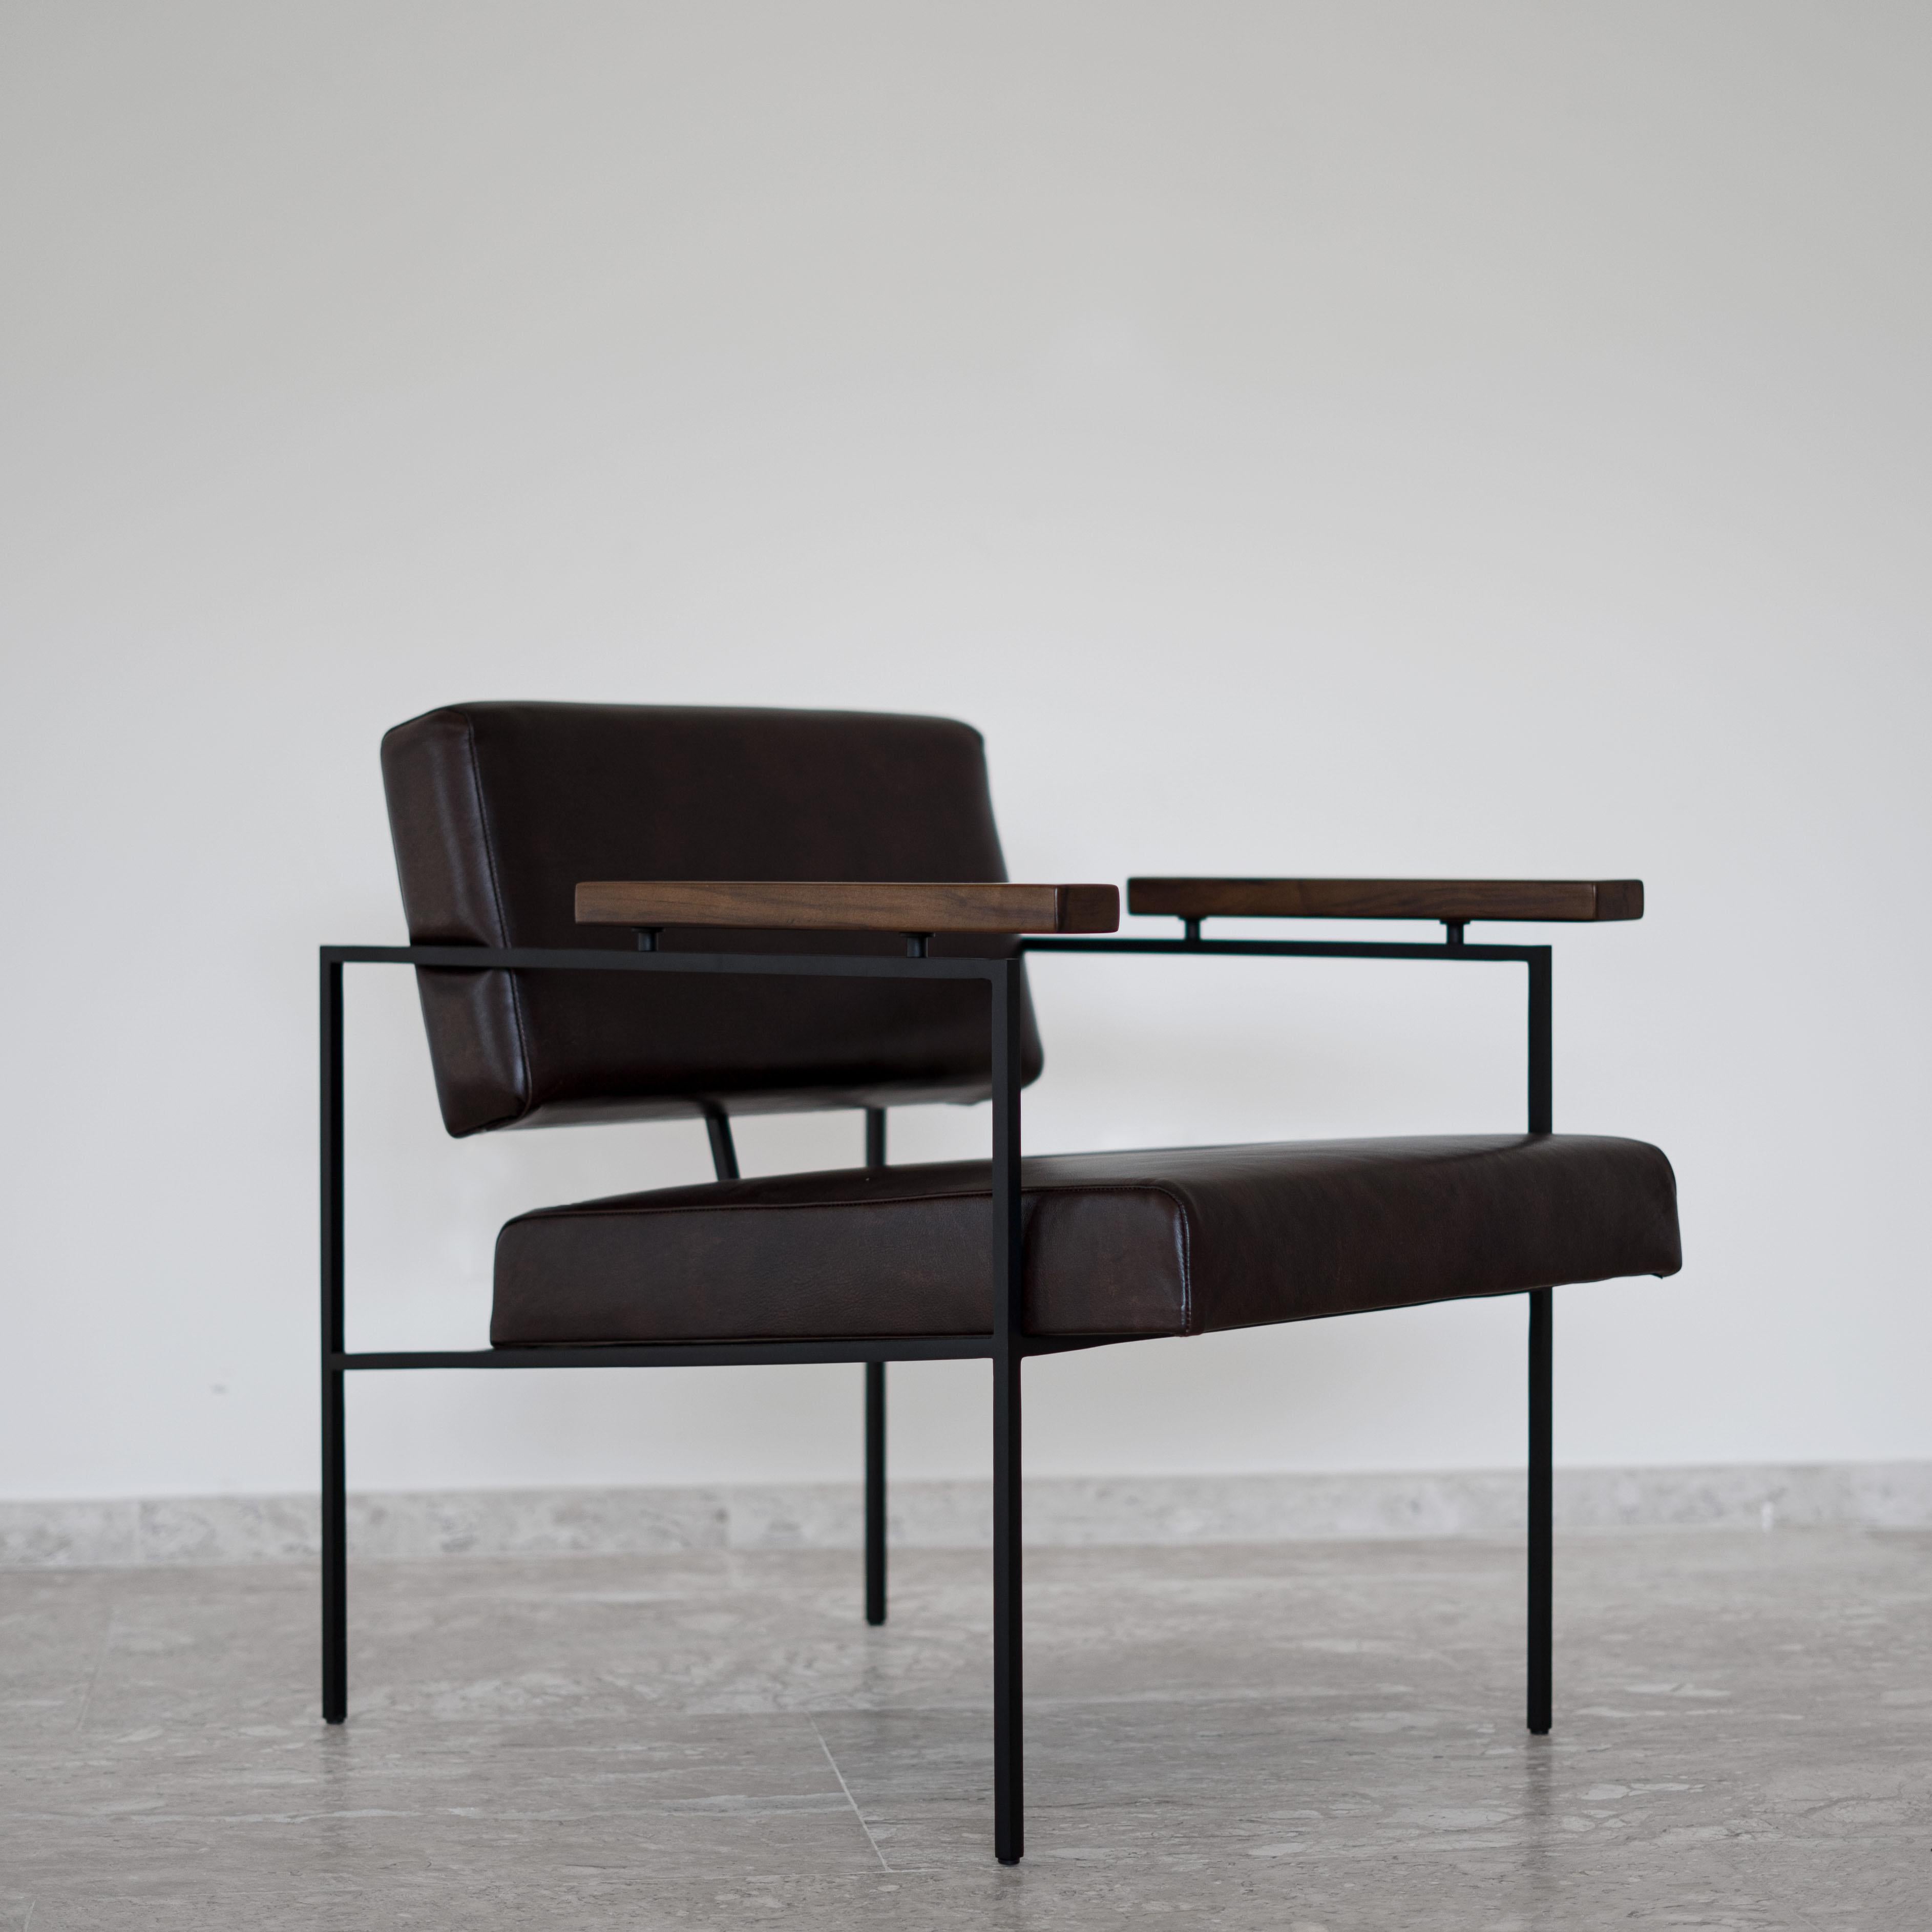 Ce fauteuil minimaliste primé 'Helena' conçu par Samuel Lamas a un raisonnement architectonique et géométrique. L'objectif est de créer une chaise simple, aux formes géométriques pures. Ses traverses carrées en fer massif créent un point de